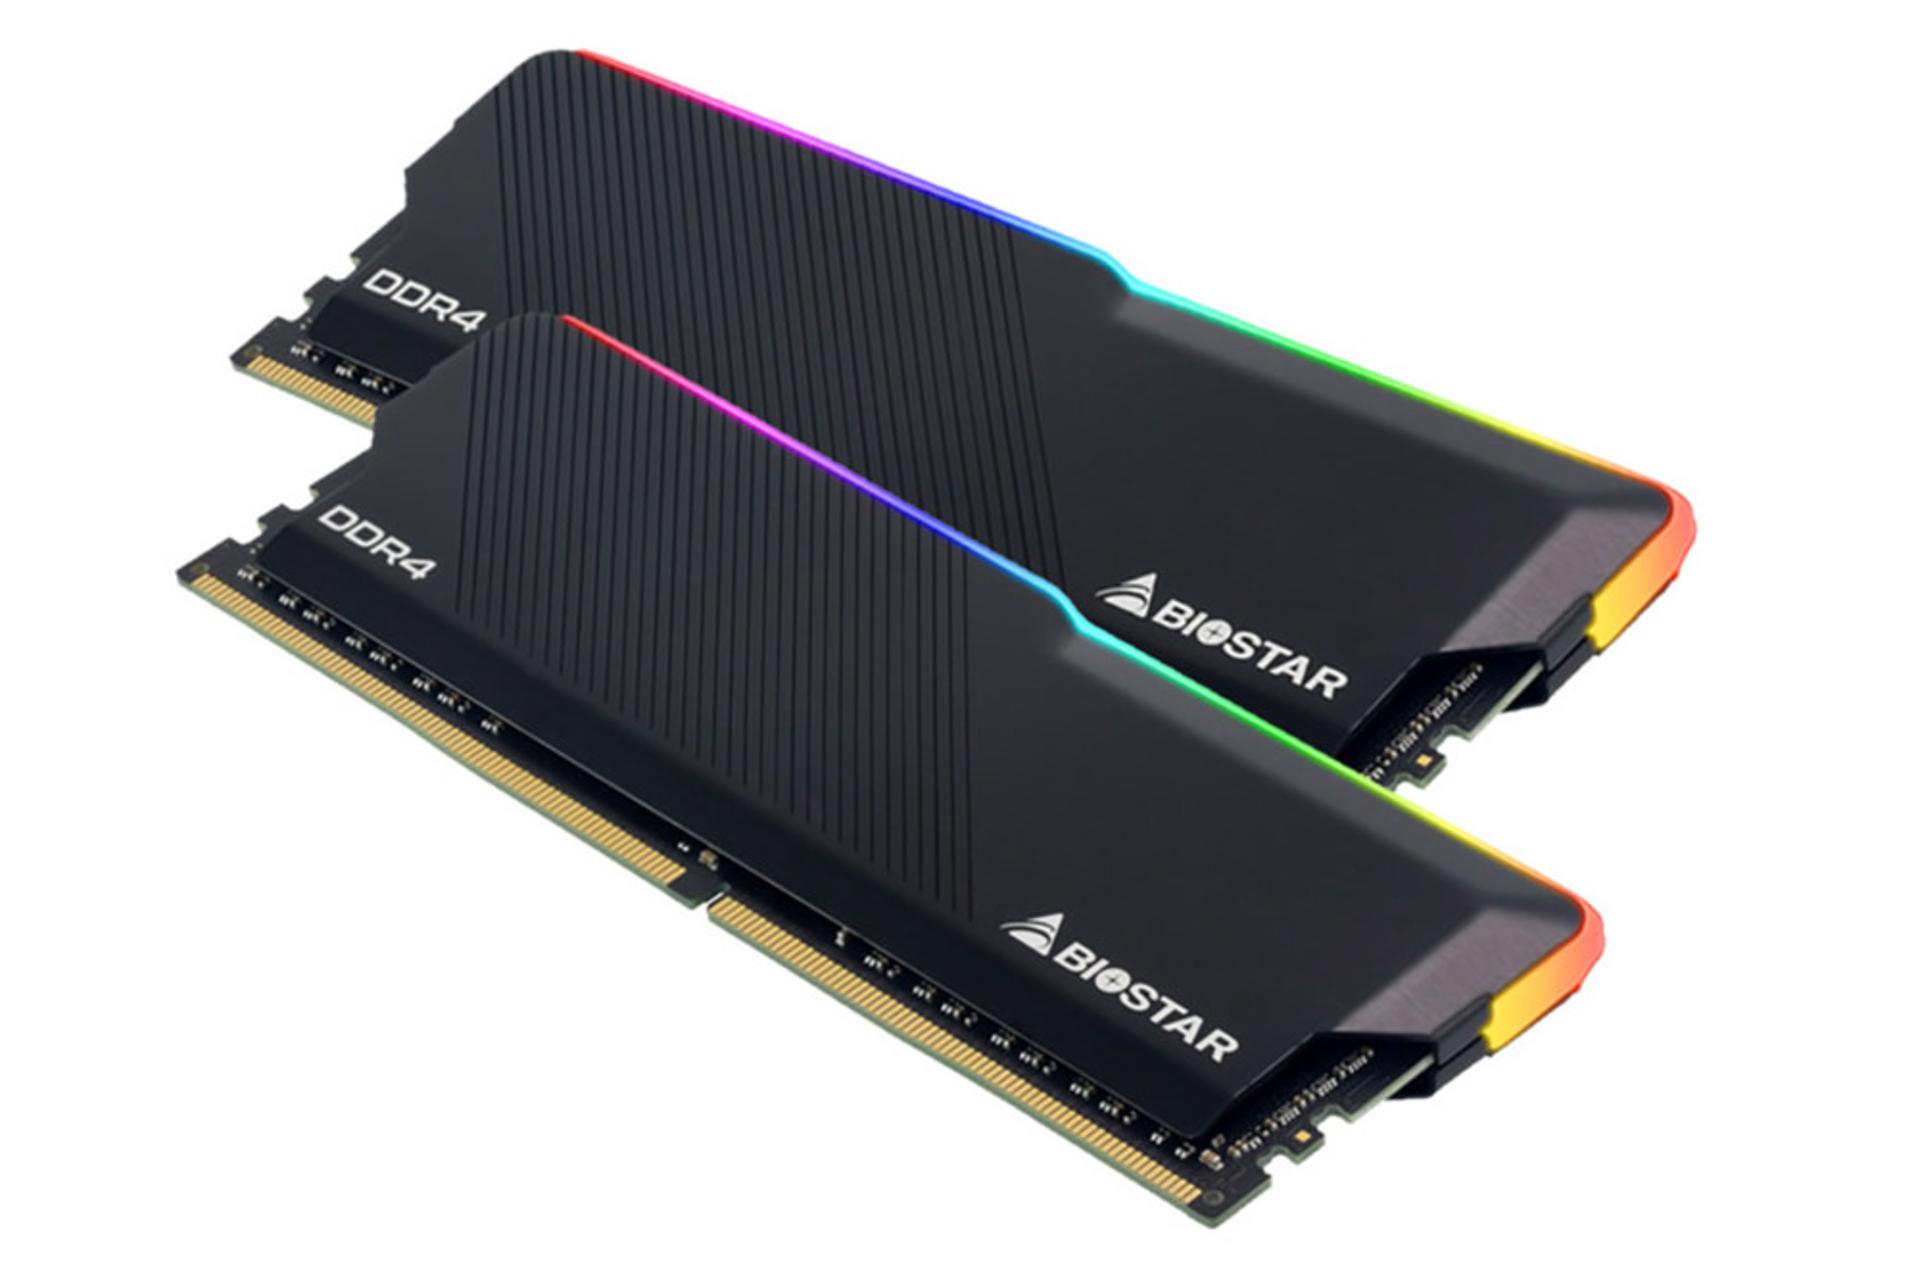 نمای رم بایواستار GAMING X ظرفیت 16 گیگابایت (2x8) از نوع DDR4-3600 